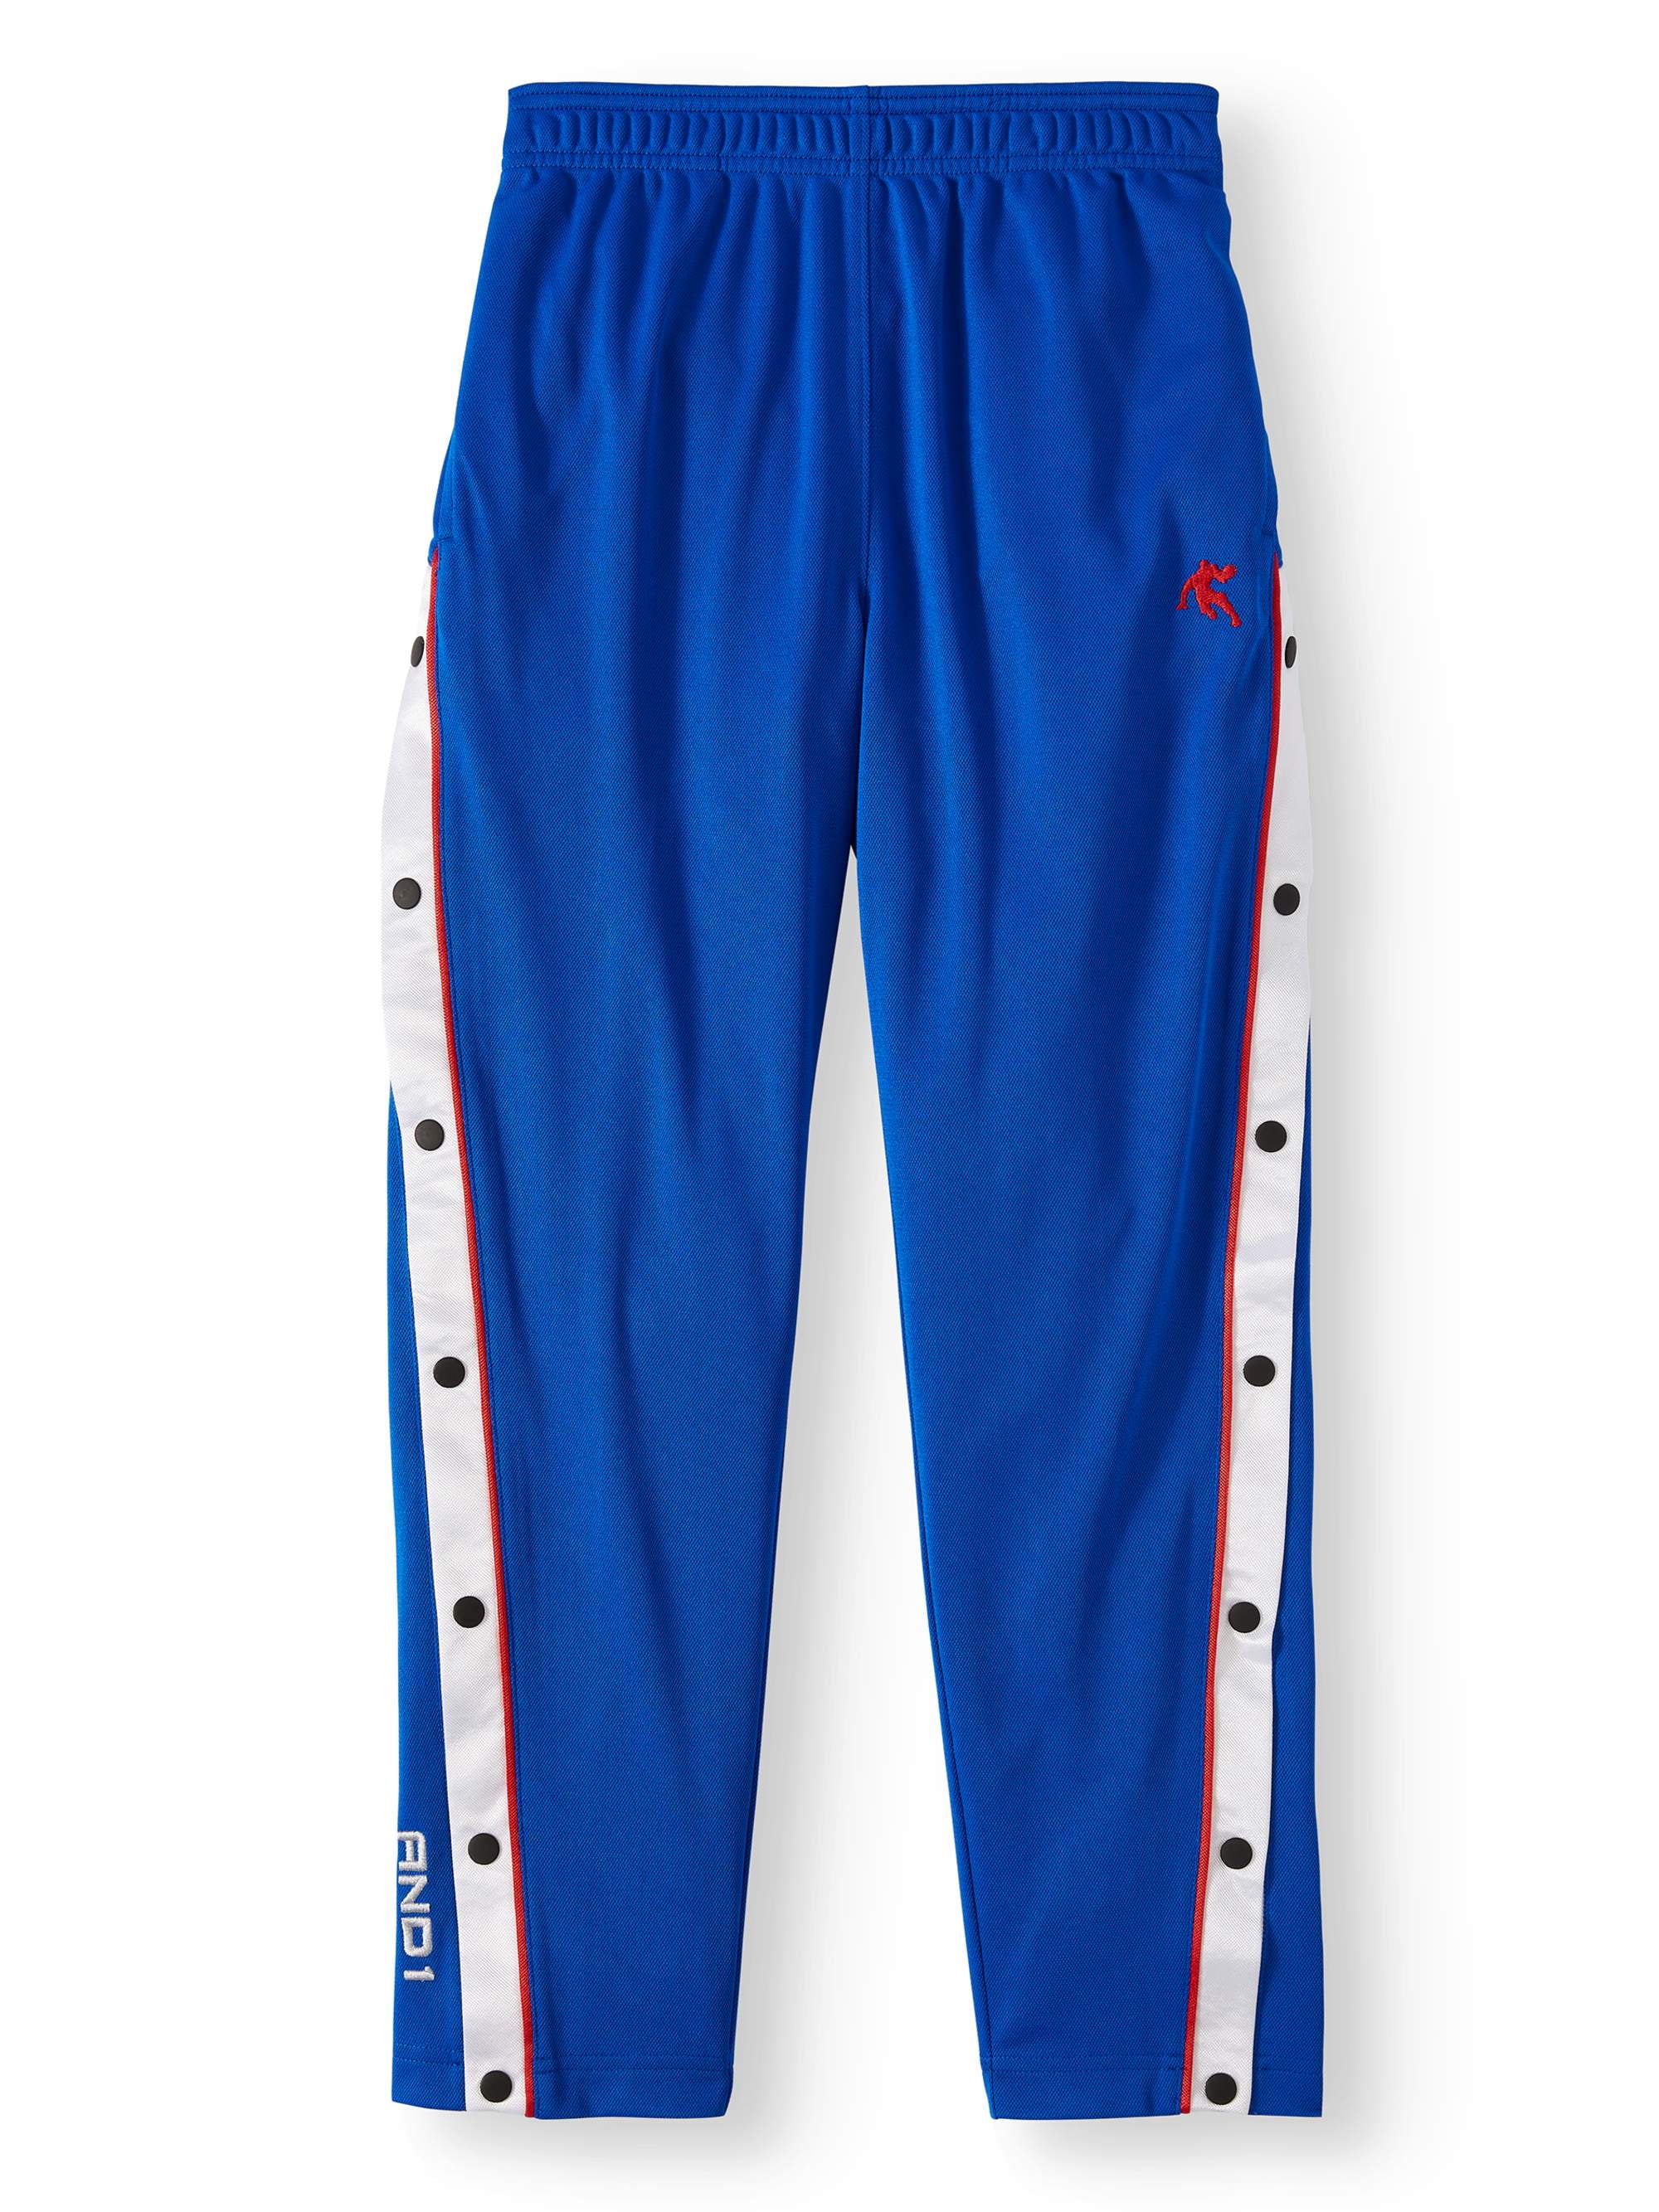 Vintage Adidas Breakaway pants Navy Blue Size:... - Depop